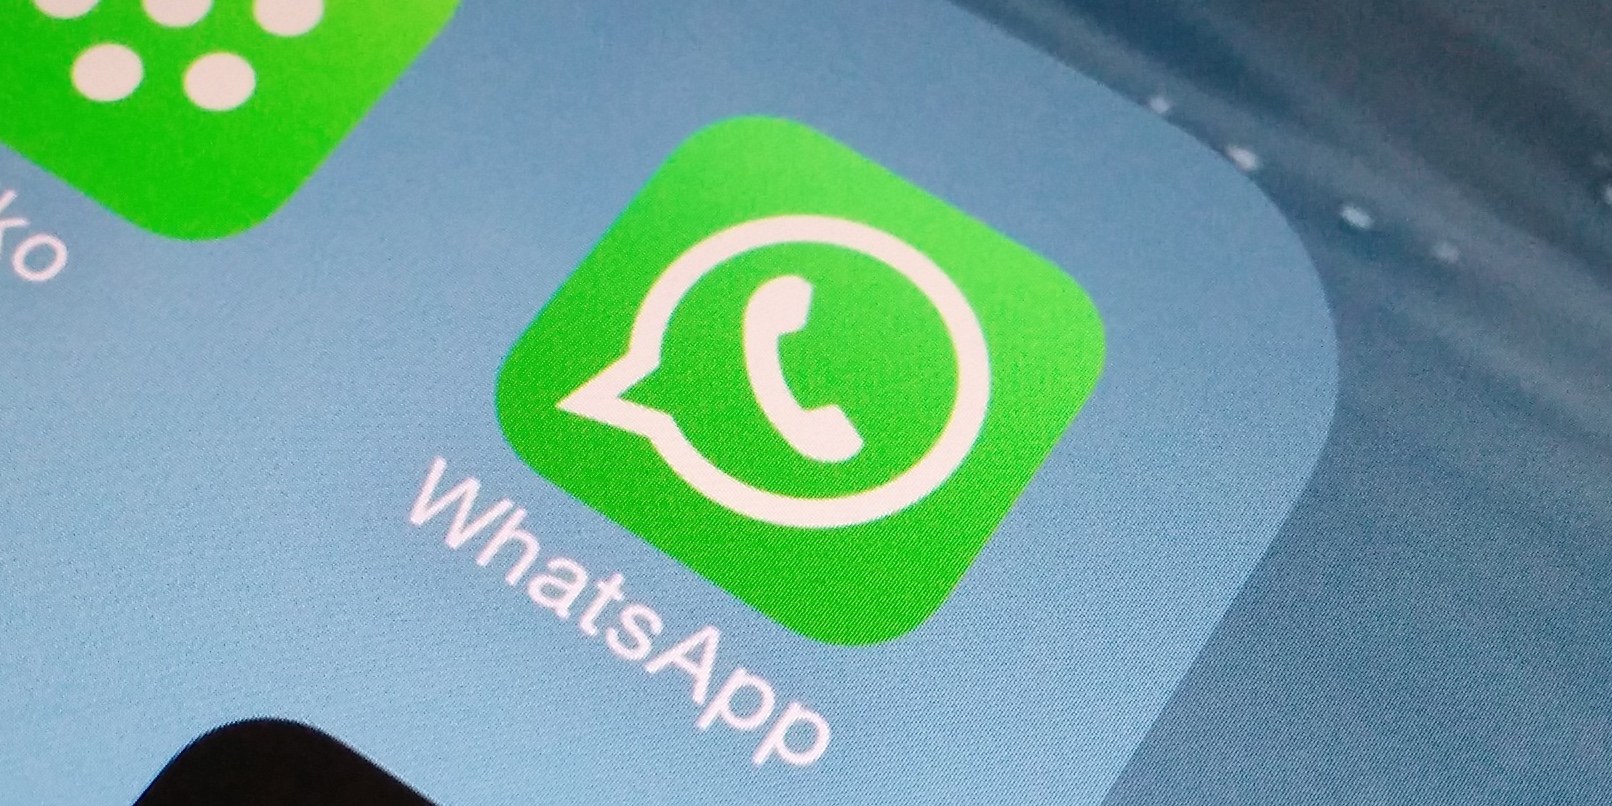 Para deter invasores, Whatsapp ativa autenticação por biometria no aplicativo